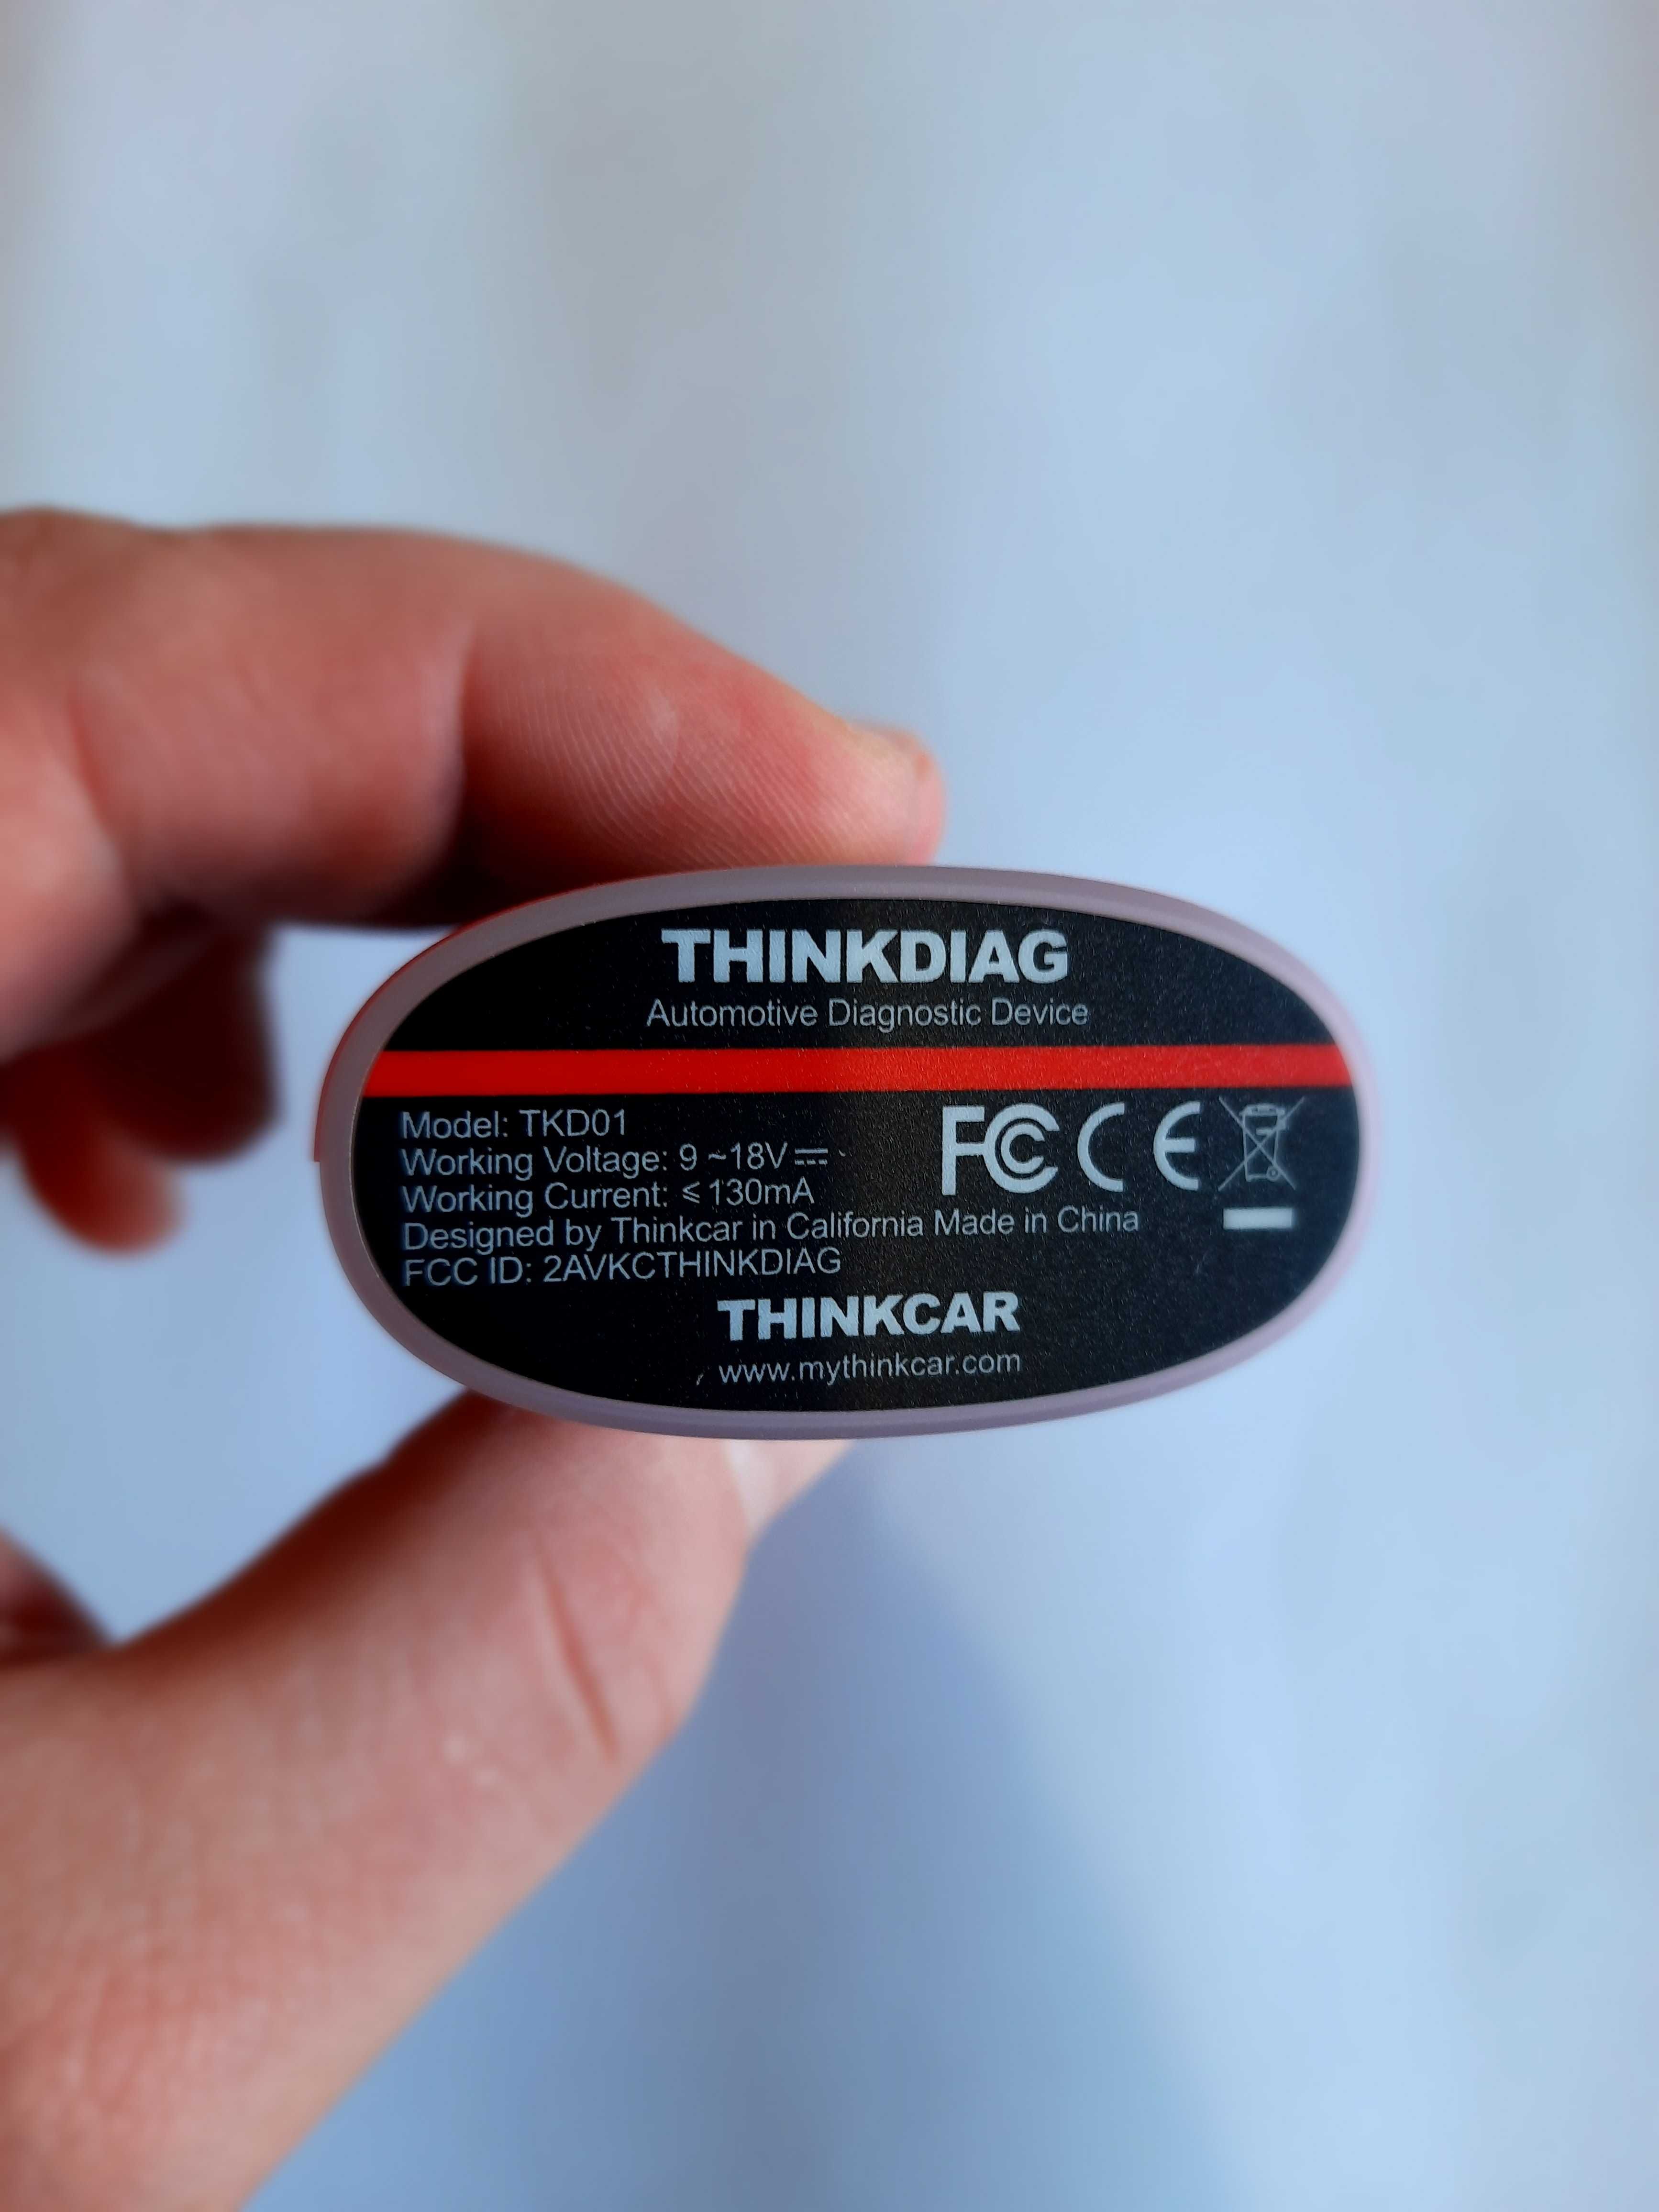 Готовий комплект! Автосканер ThinkDiag ліцензія +Планшет /Diagzone pro